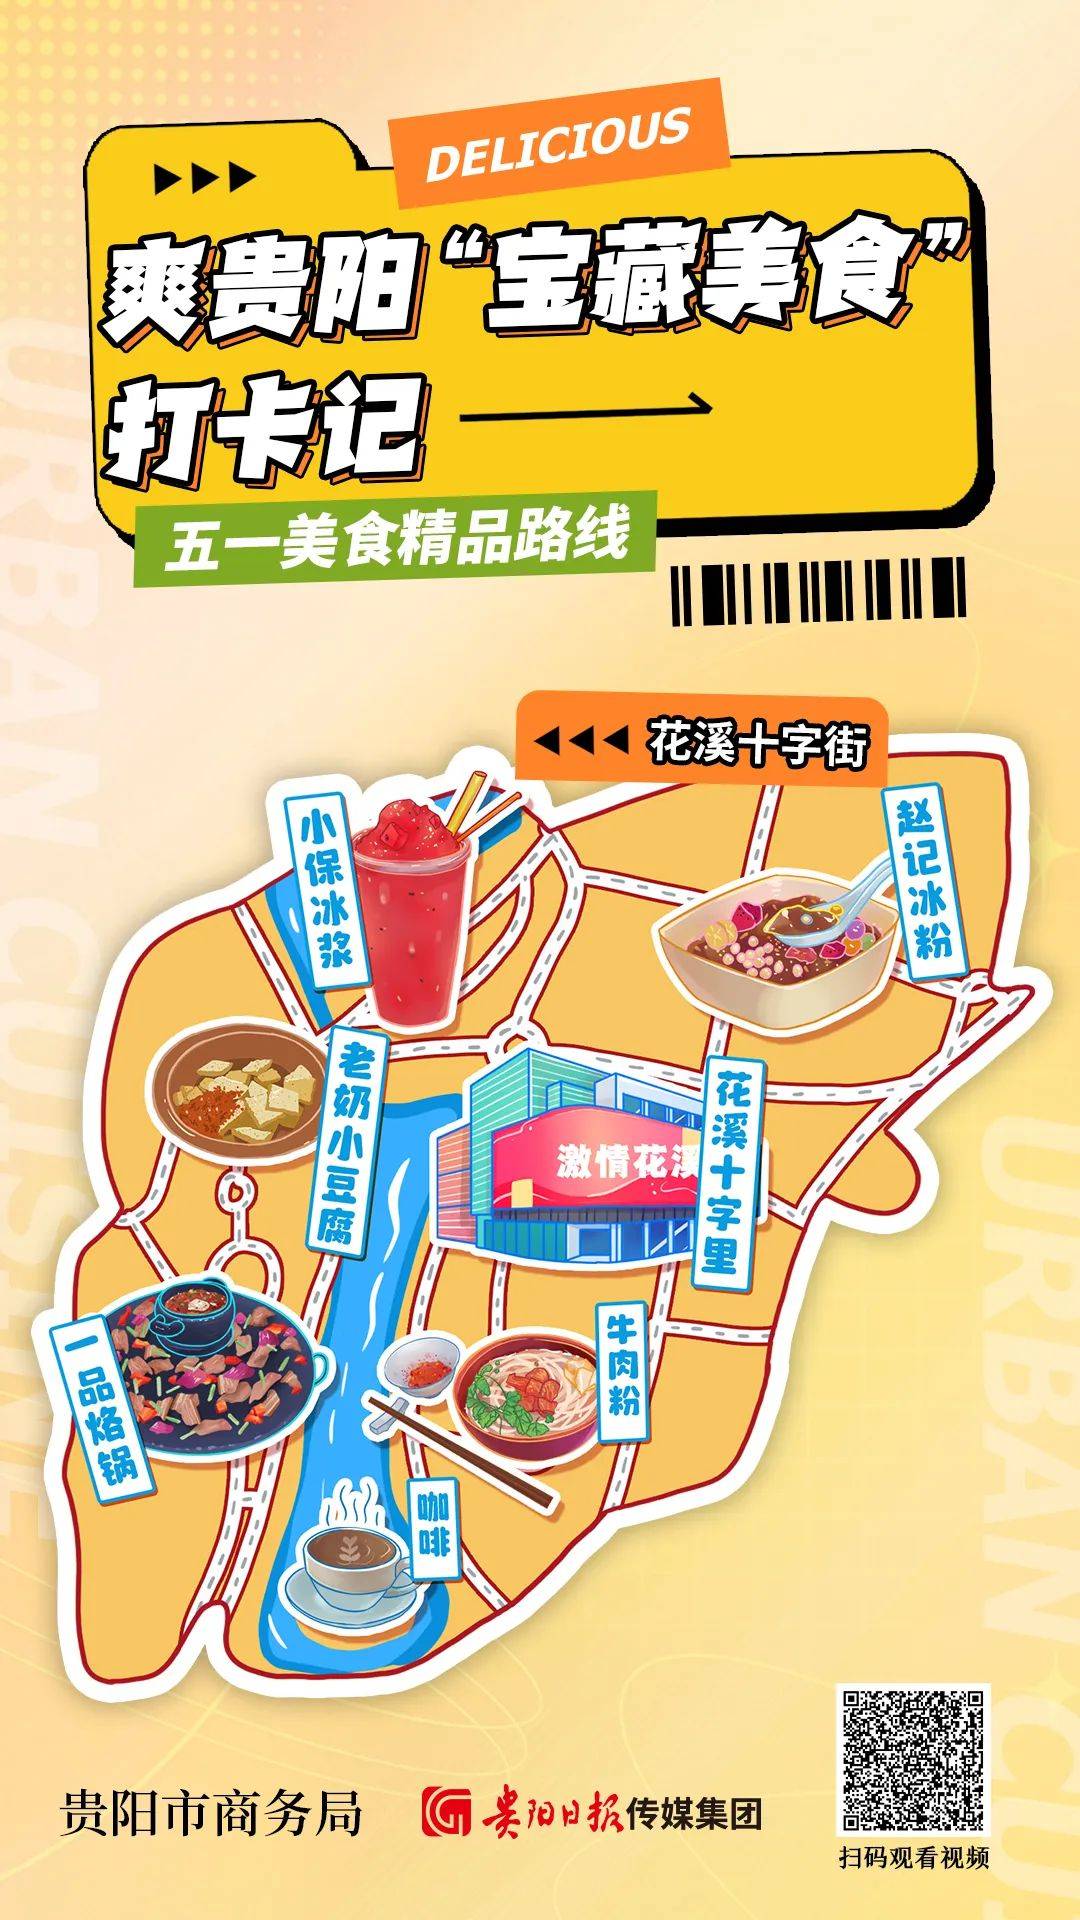 贵阳市商务局、贵阳日报传媒集团带你“一网打尽”贵阳特色美食